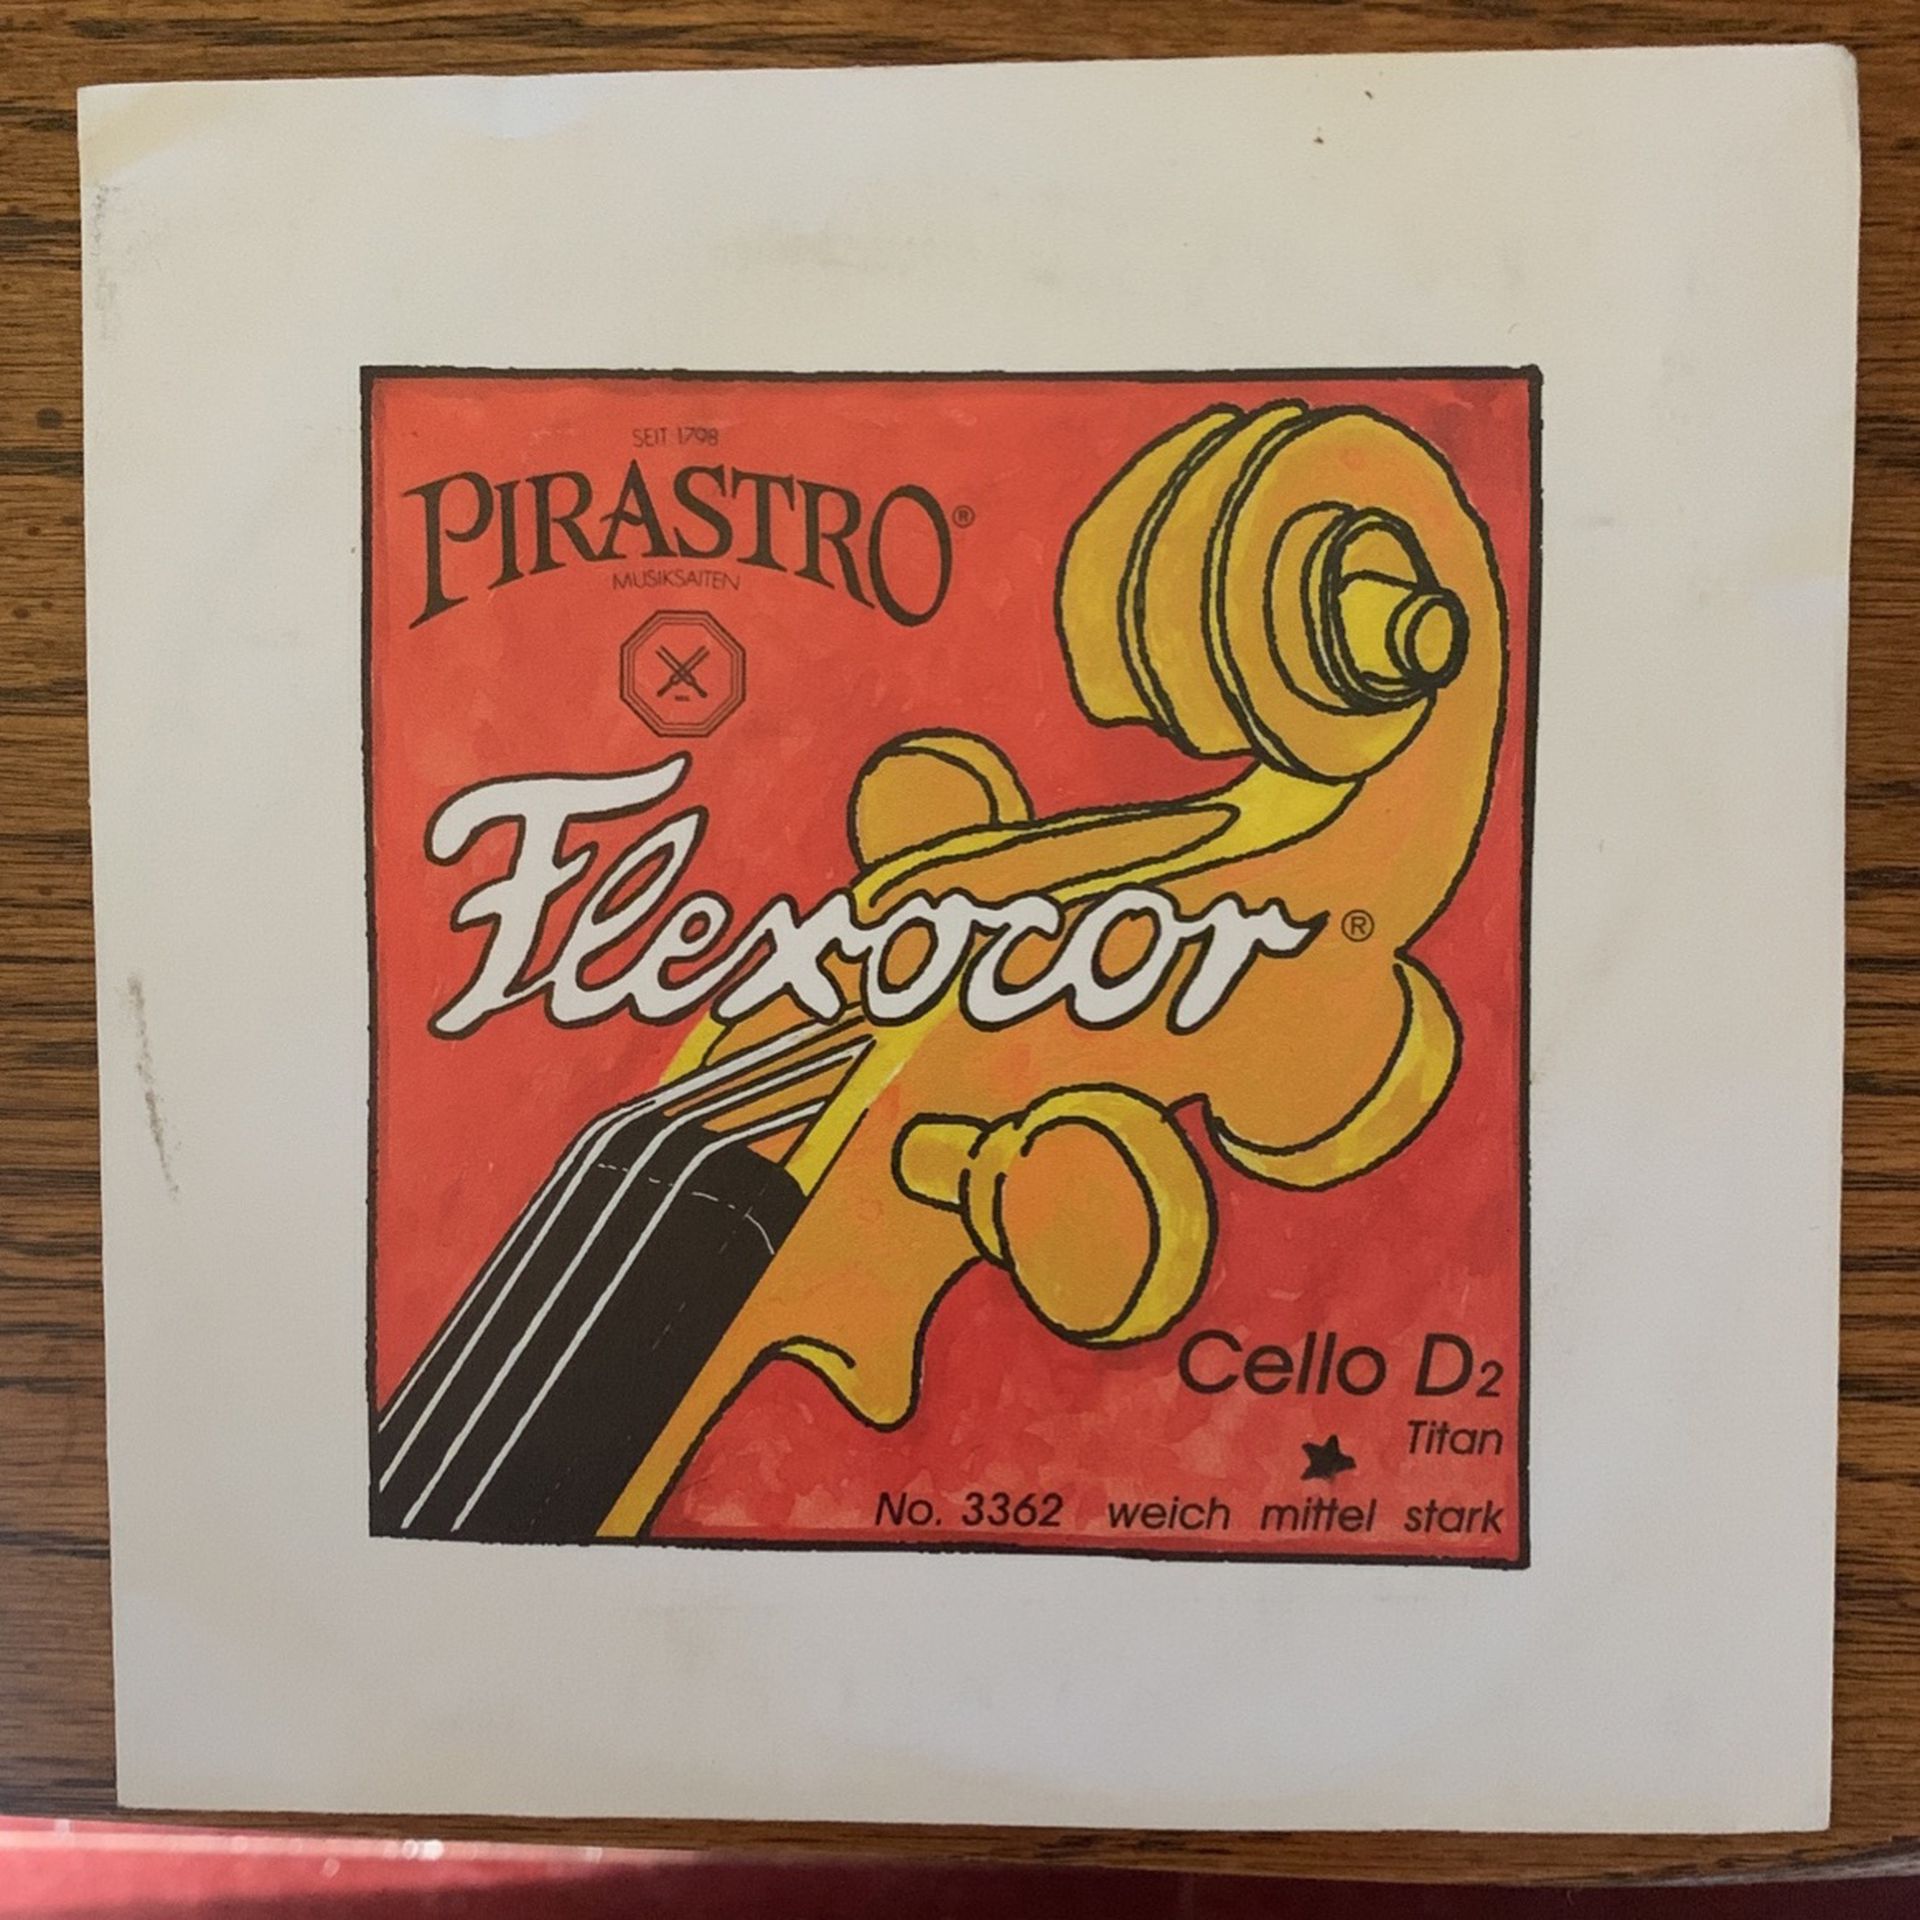 Pirastro Flexocor 4/4 Cello D String New